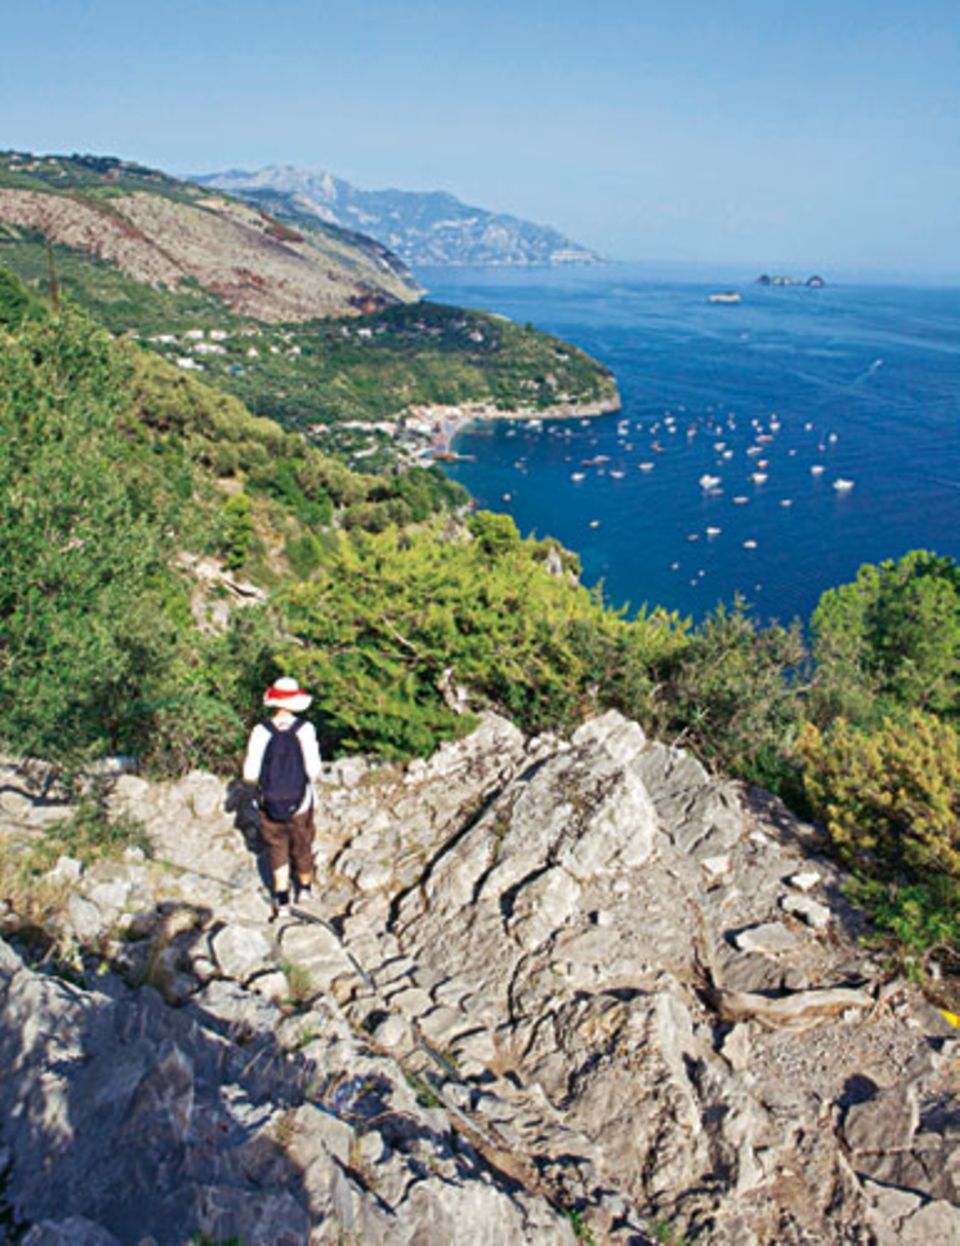 Berückende Aussichten auf einer Wanderung auf alten Maultierpfaden der Sorrentiner Halbinsel